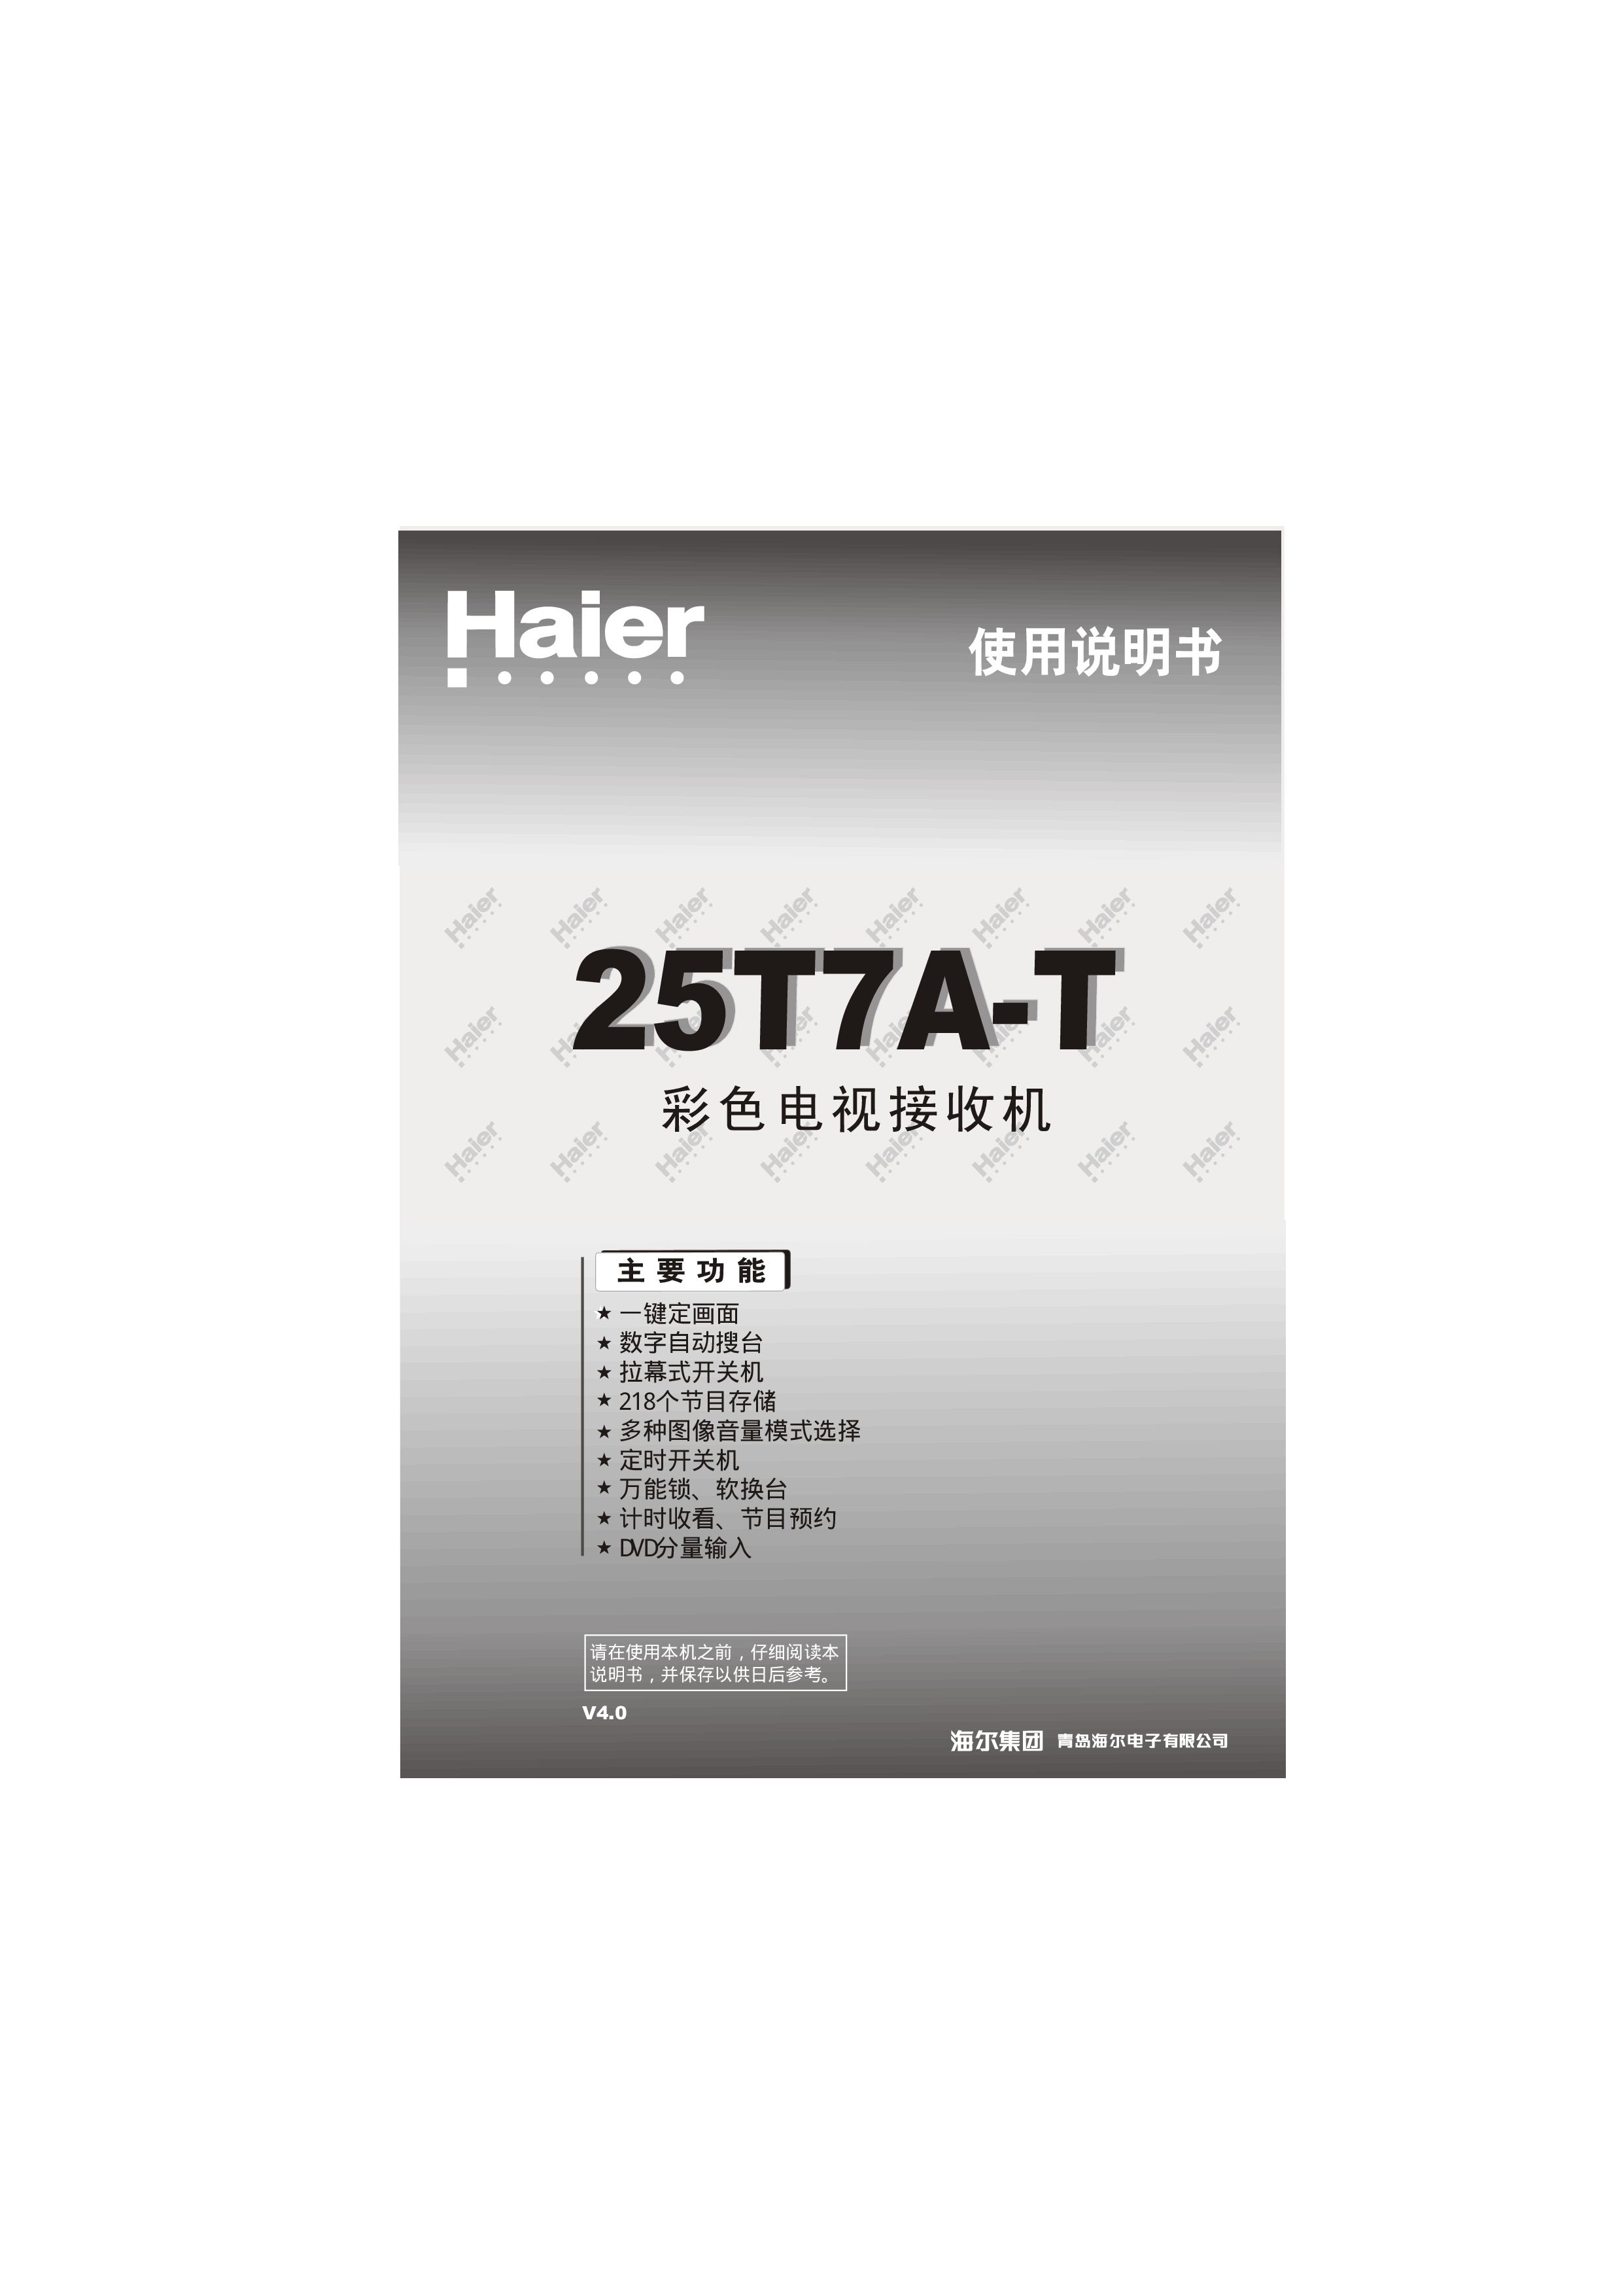 海尔 Haier 25T7A-T 使用说明书 封面